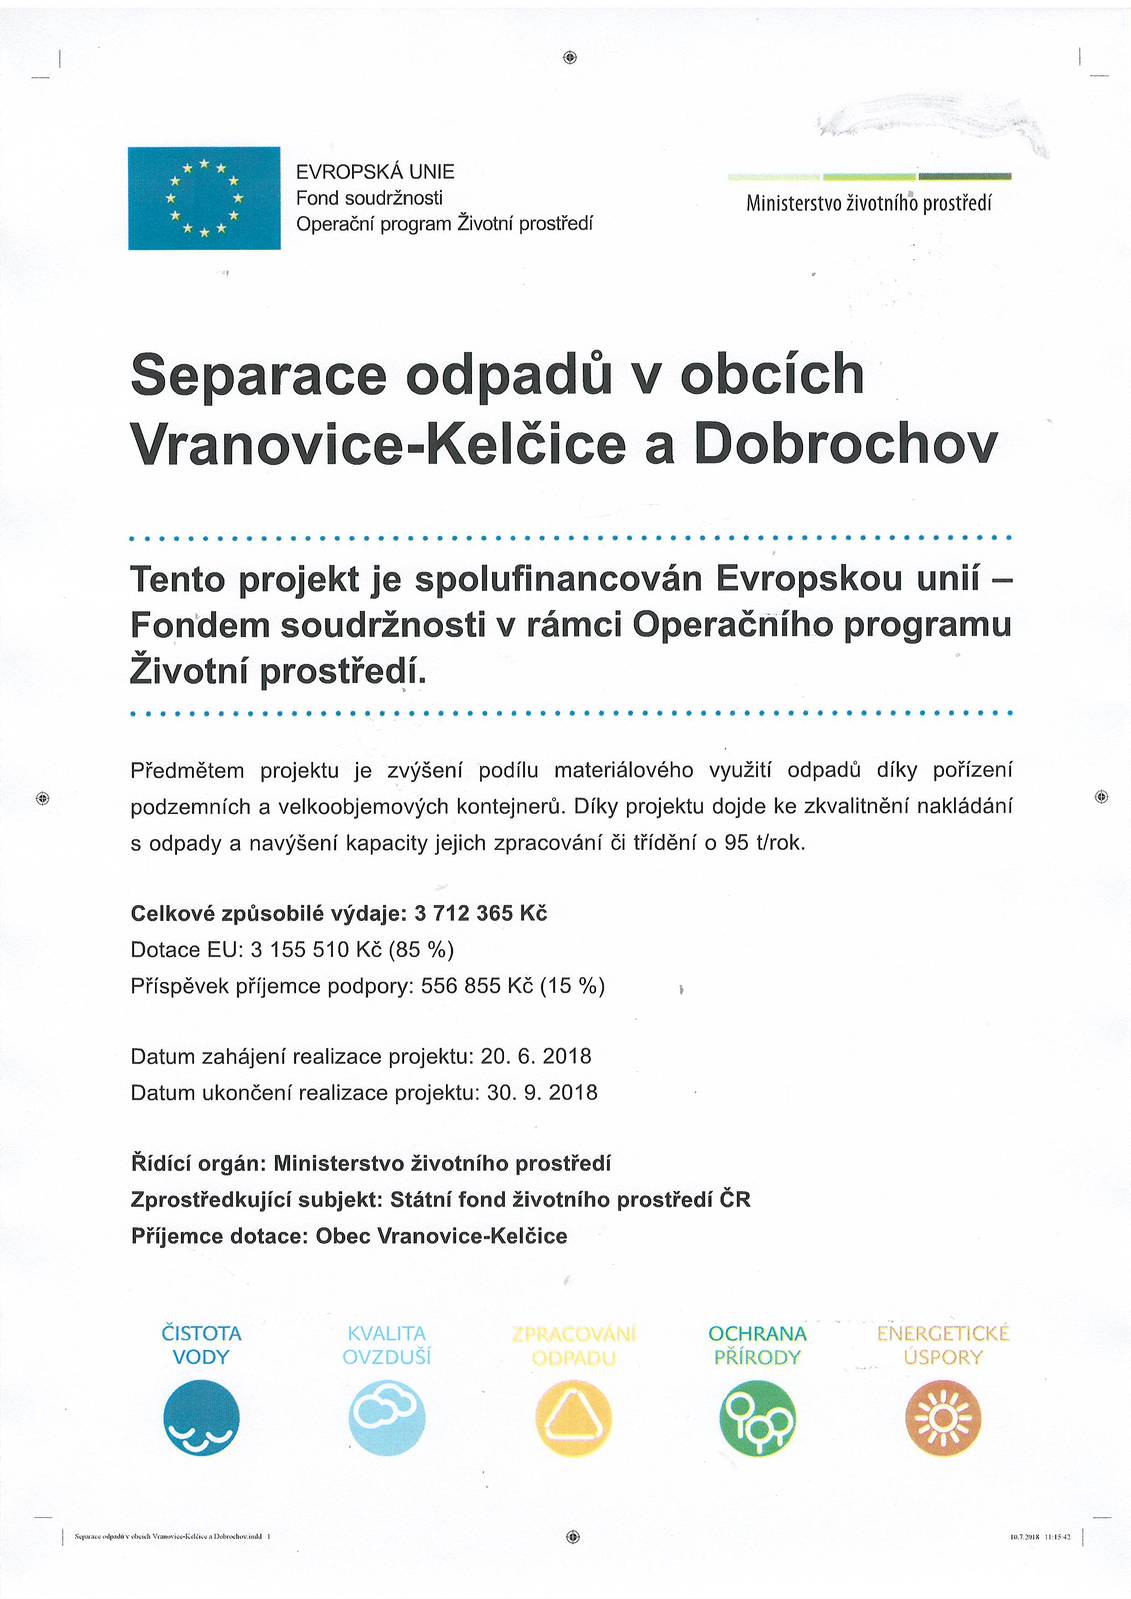 " Separace odpadů v obcích Vranovice-Kelčice a Dobrochov“, registrační číslo CZ.05.3.29/0.0/0.0/16_041/0003586. 